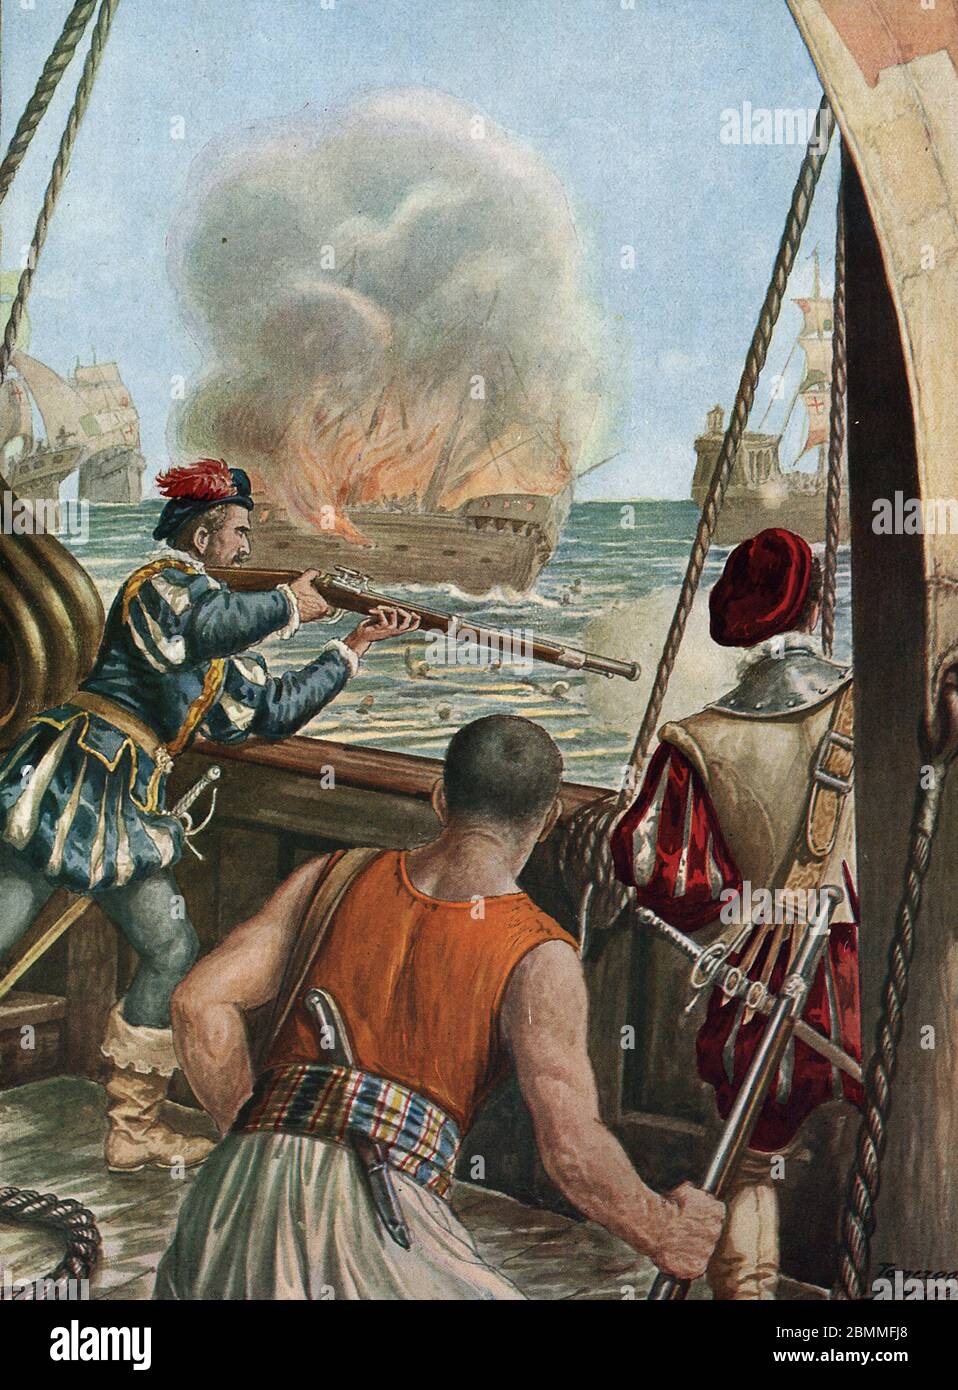 Deuxieme expedition aux Indes (1502-1503) 'Bataille navale entre la flotte portugaise de Vasco de Gama et celle de Calicut, les portugais incendient l Stock Photo